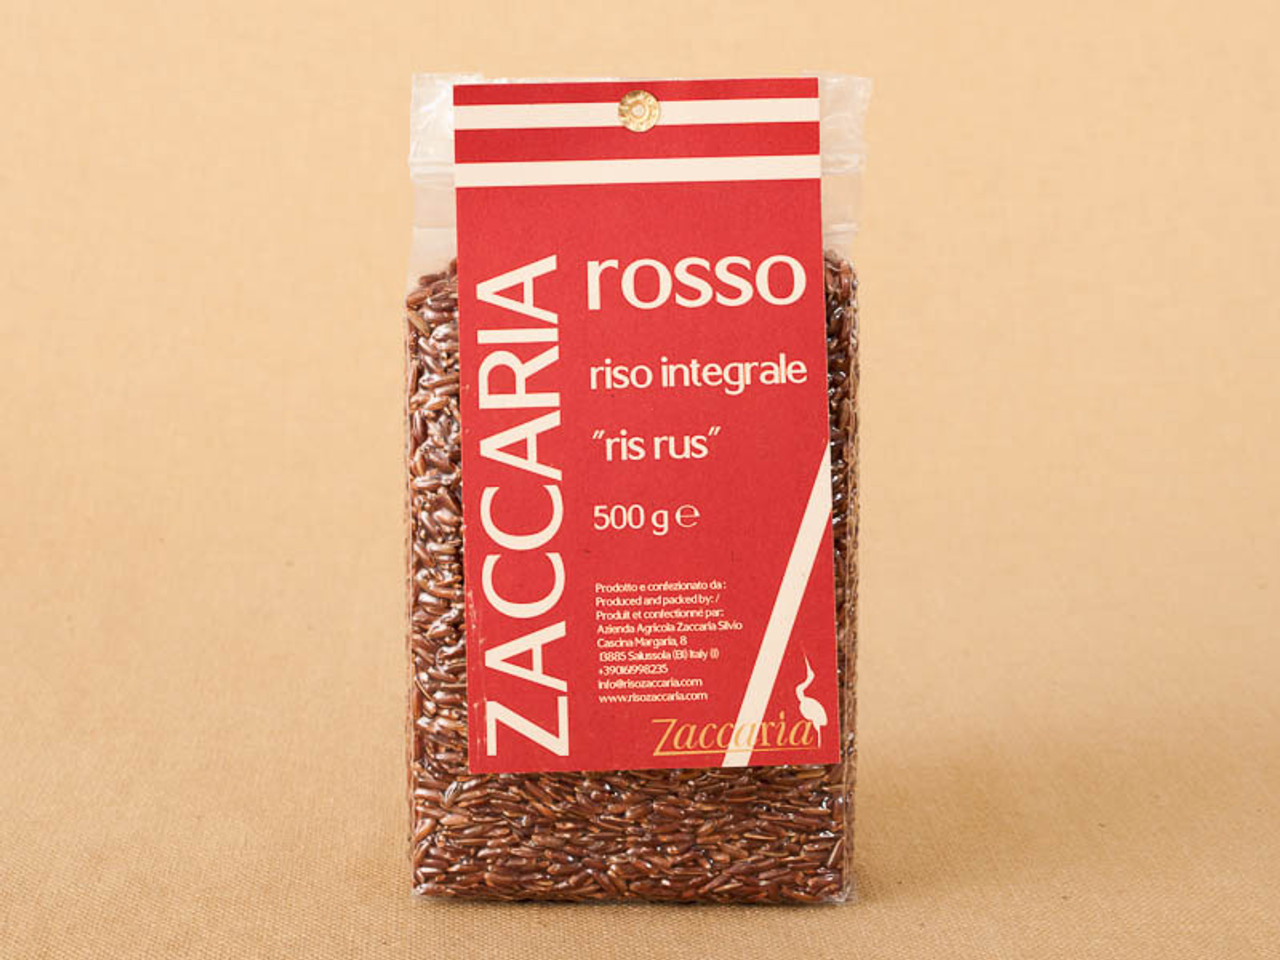 Zaccaria Riso Rosso (Red) 500g - Formaggio Kitchen Online